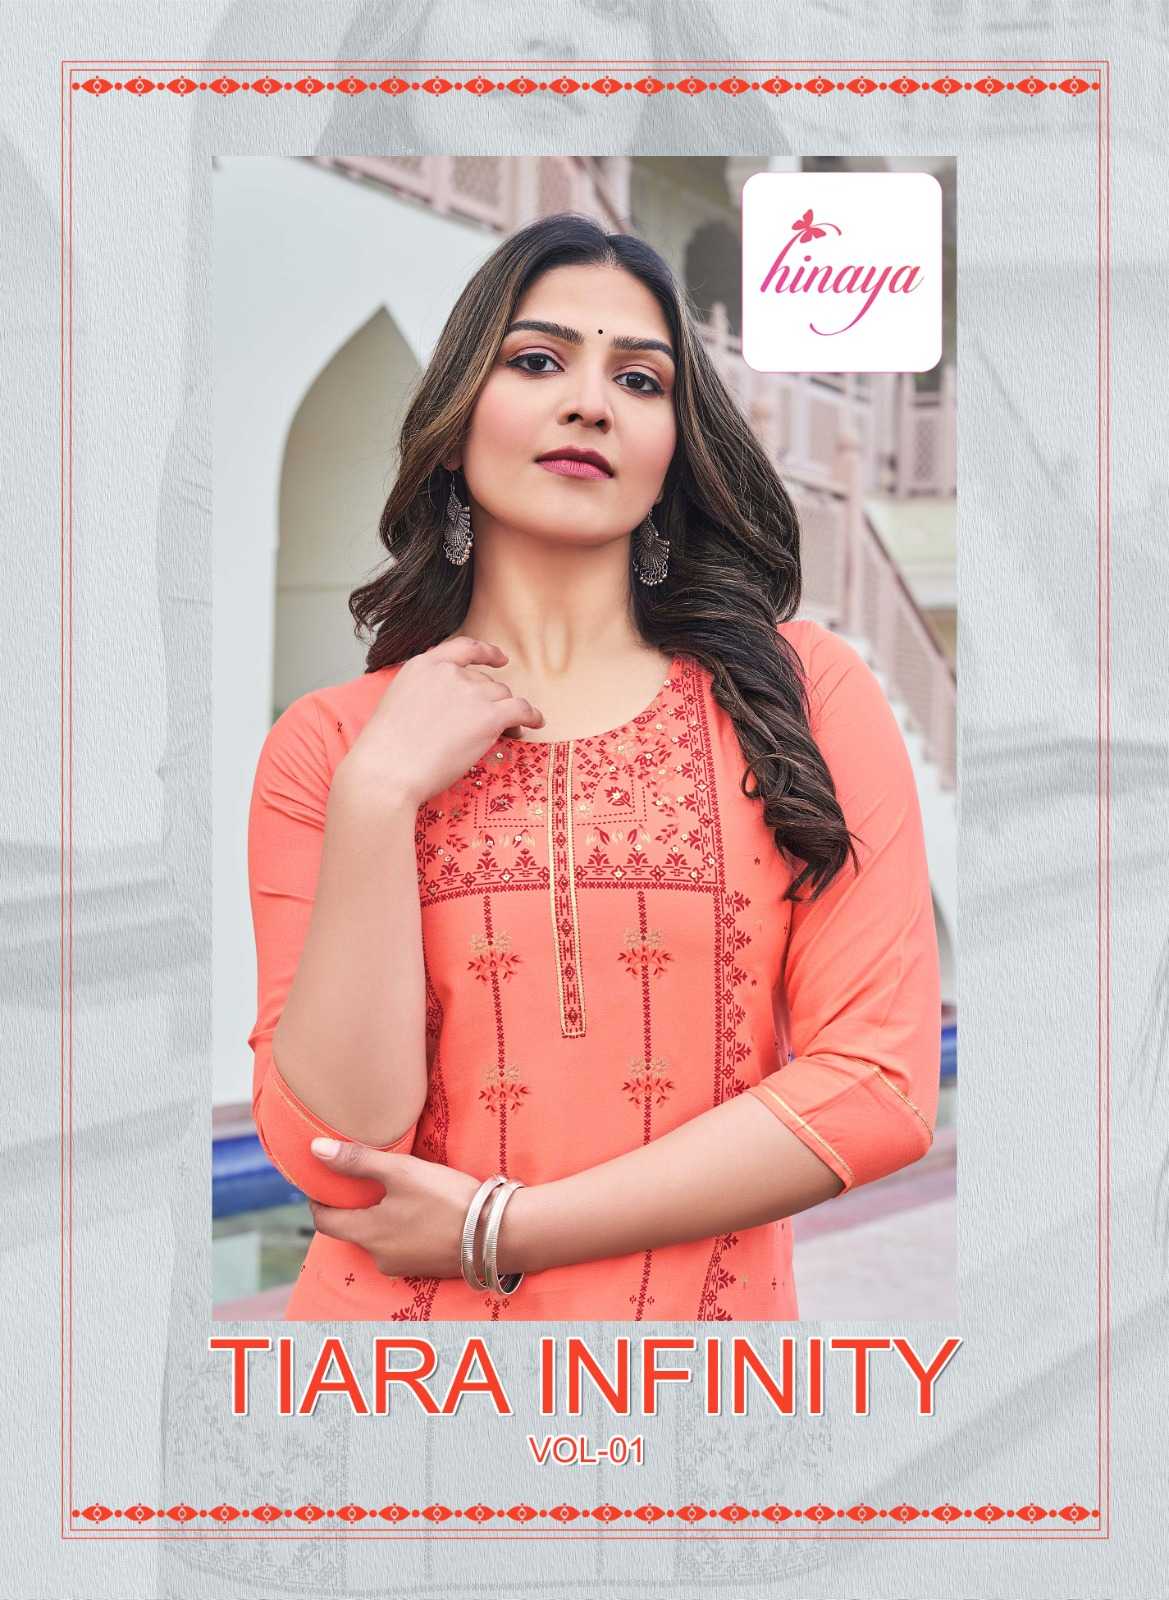 hinaya tiara infinity vol 1 stitched fancy rayon straight kurti